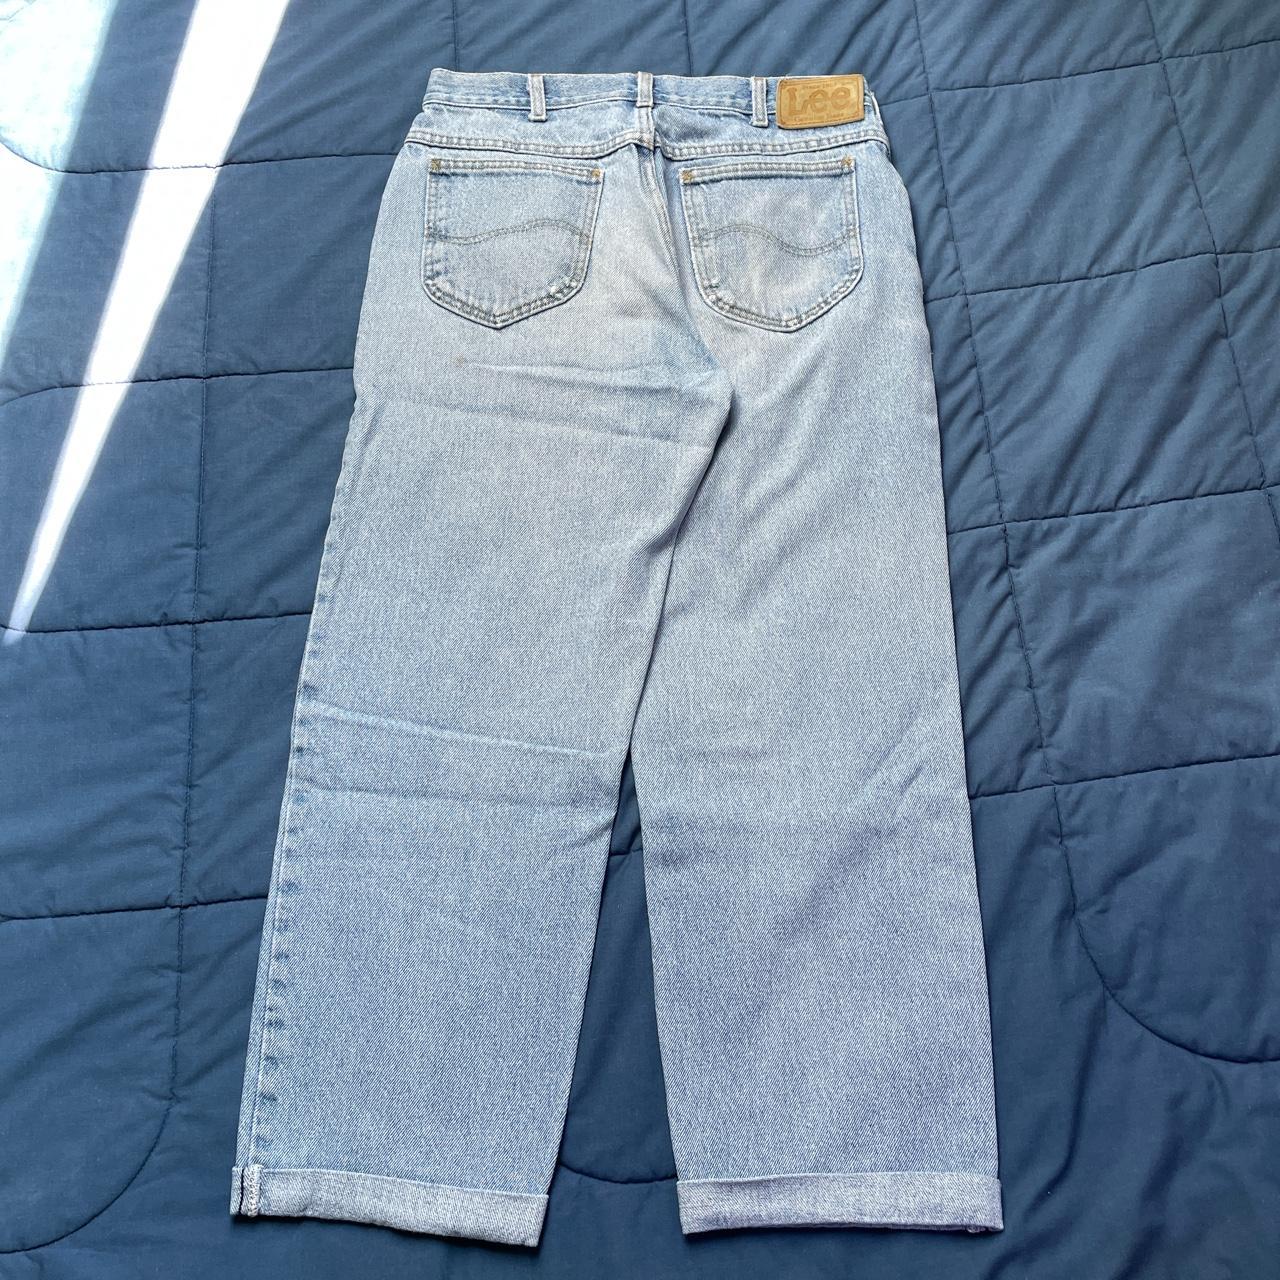 VINTAGE Lee light wash jeans, tagged 32x32,... - Depop